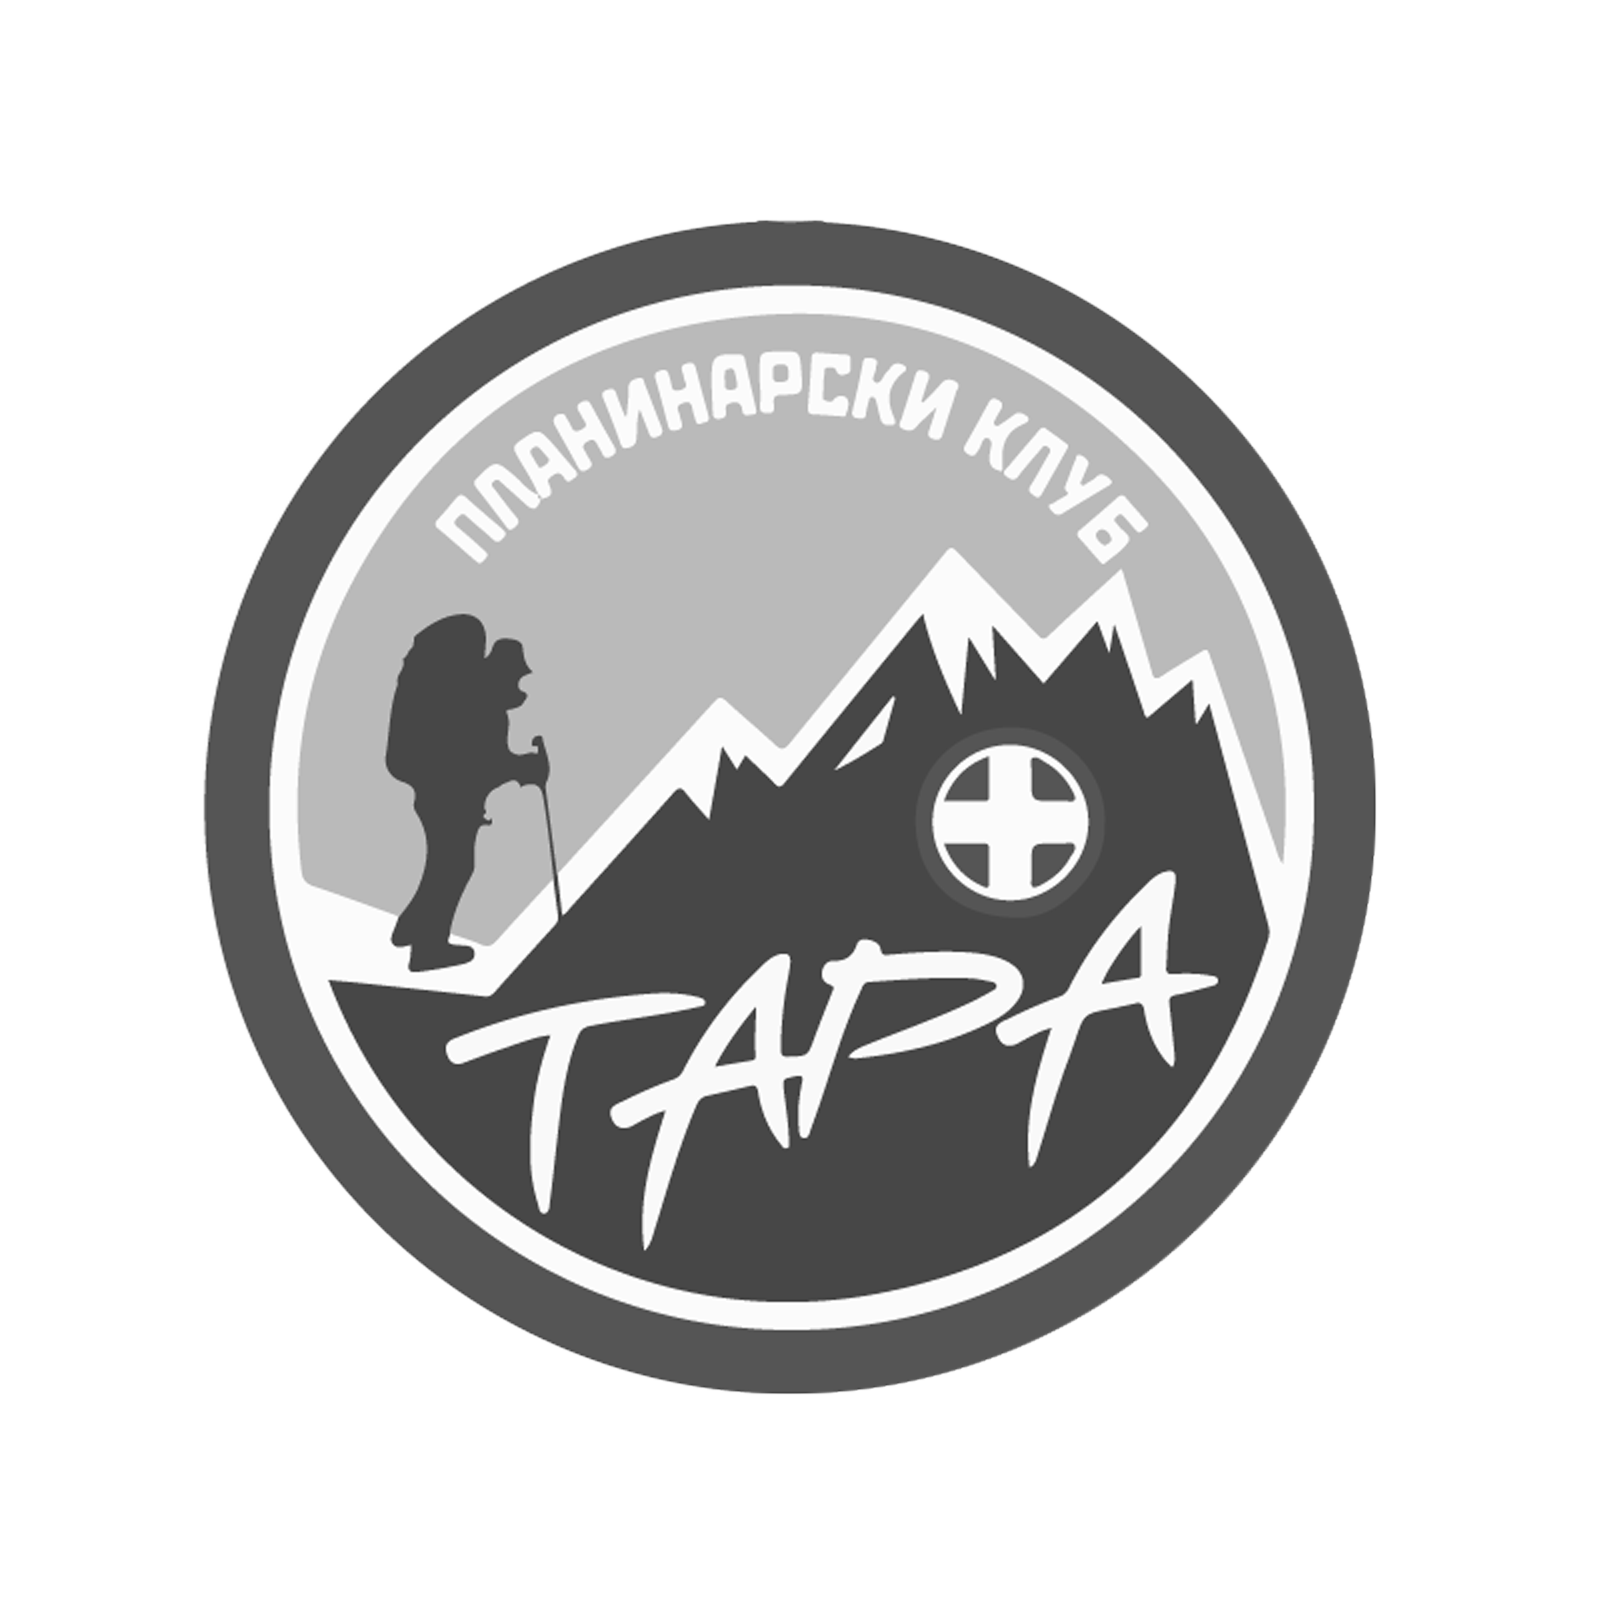 Mountaineering Association Tara